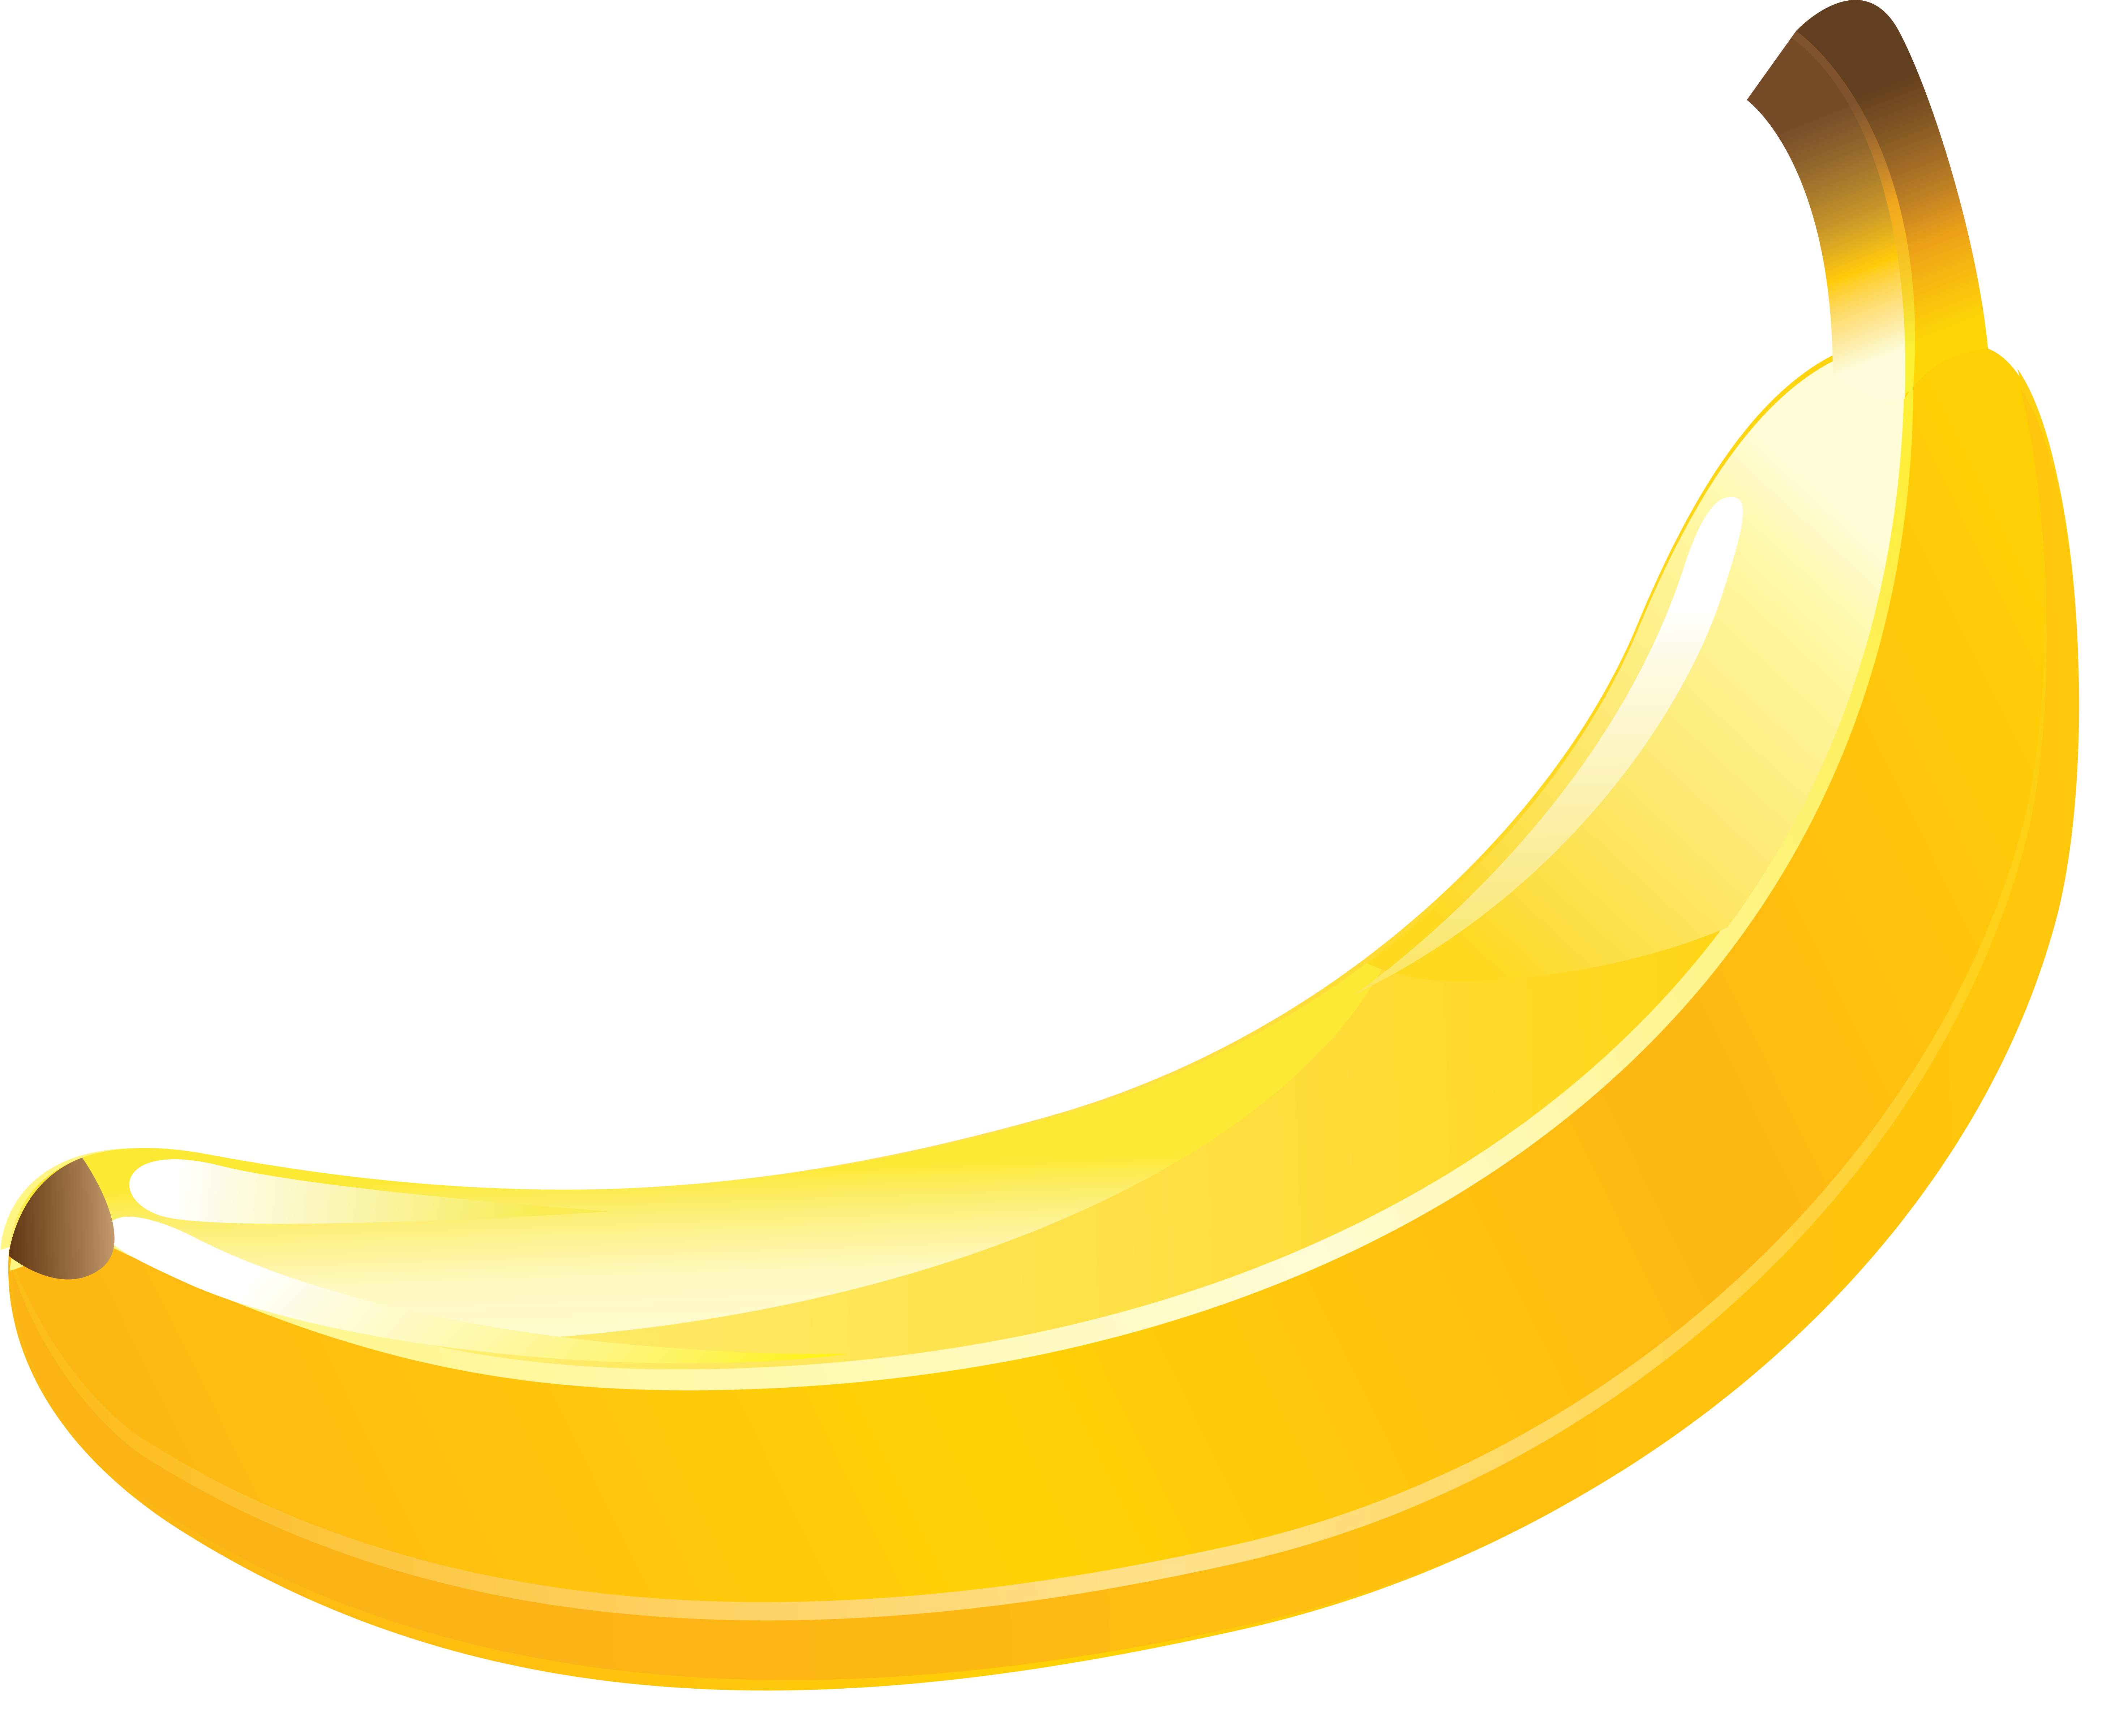 Fotos de banana